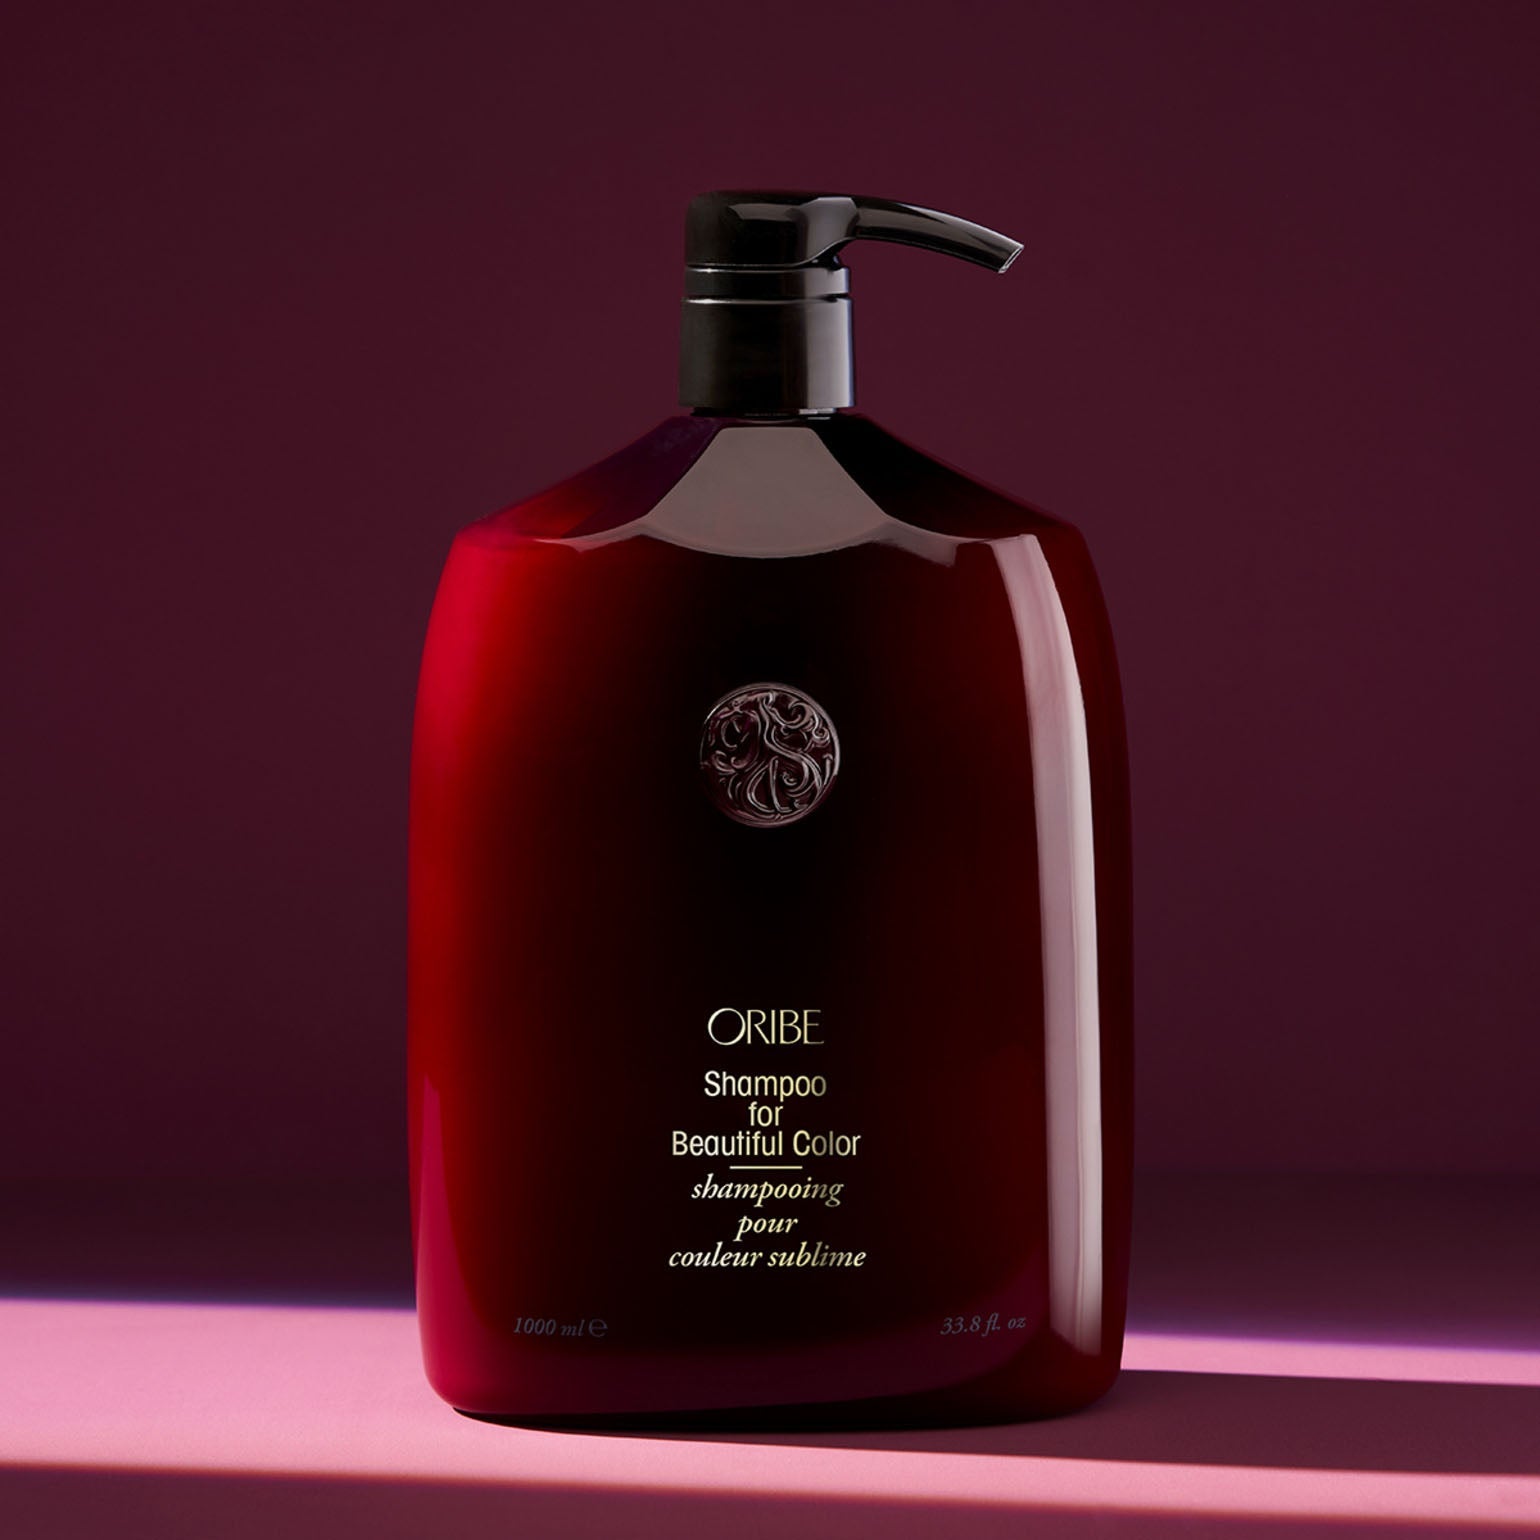 Oribe. Shampoing pour Couleur Sublime (Recharge) - 1000 ml - Concept C. Shop